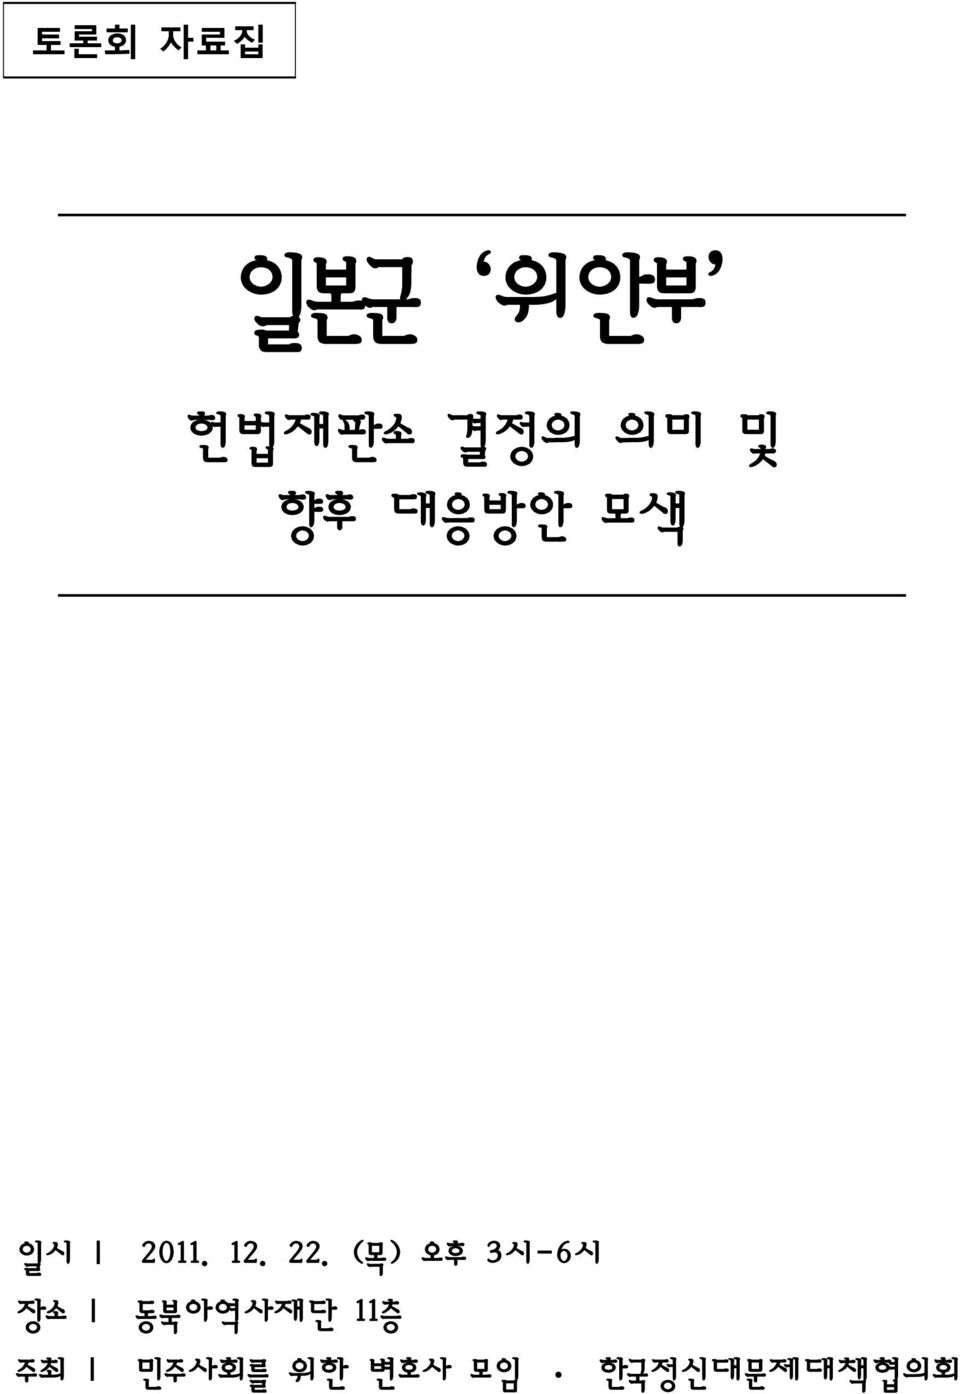 (목) 오후 3시-6시 장소 동북아역사재단 11층